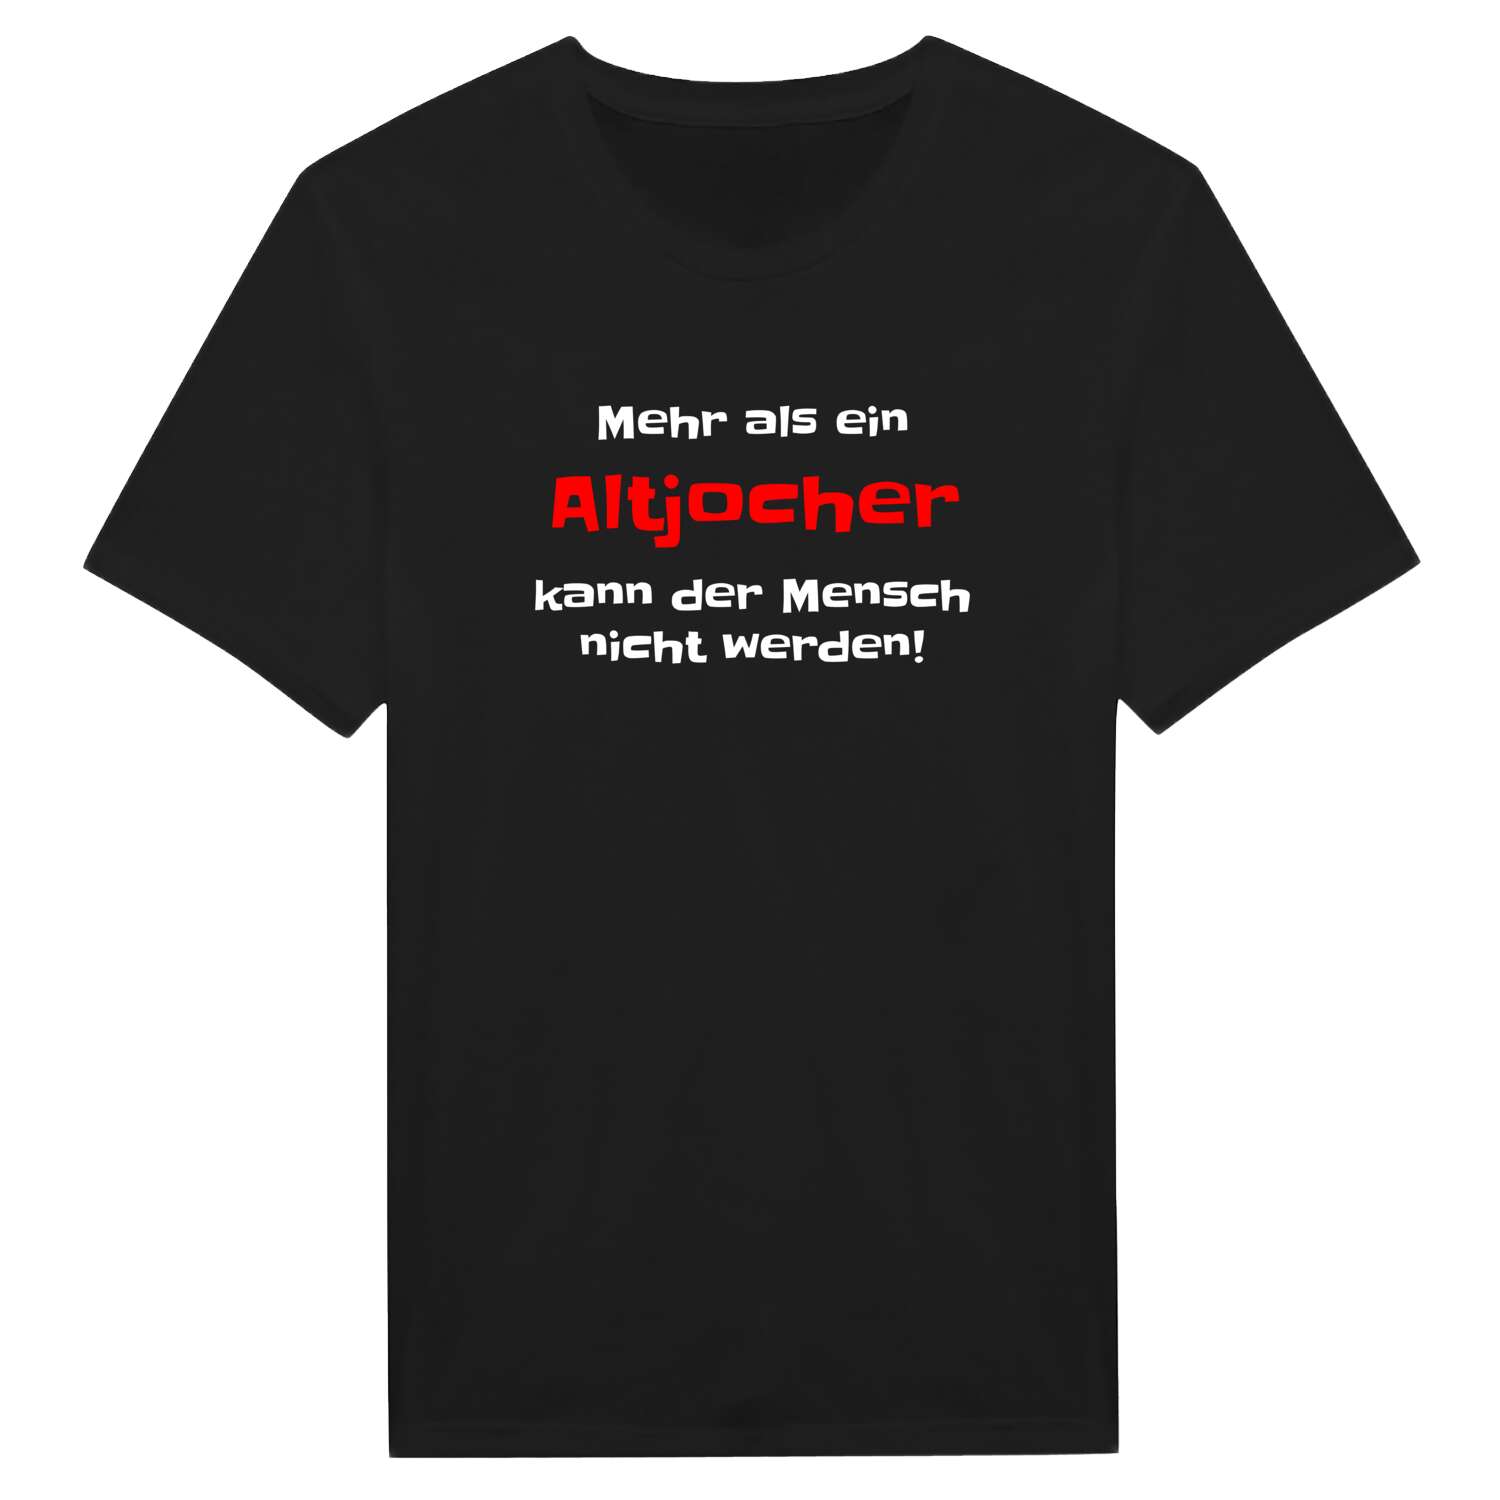 Altjoch T-Shirt »Mehr als ein«